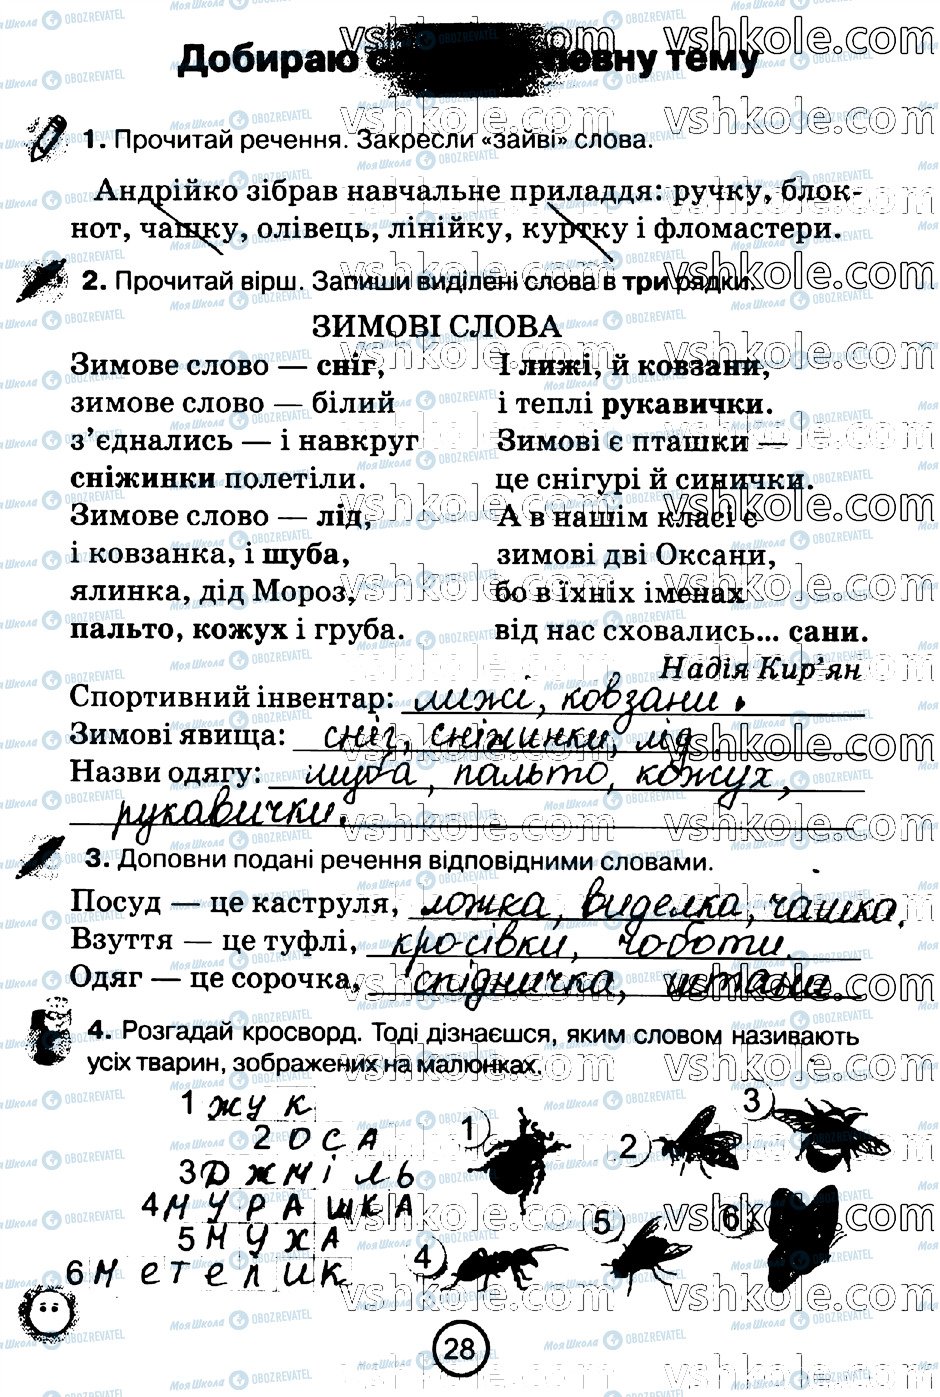 ГДЗ Укр мова 2 класс страница стр28